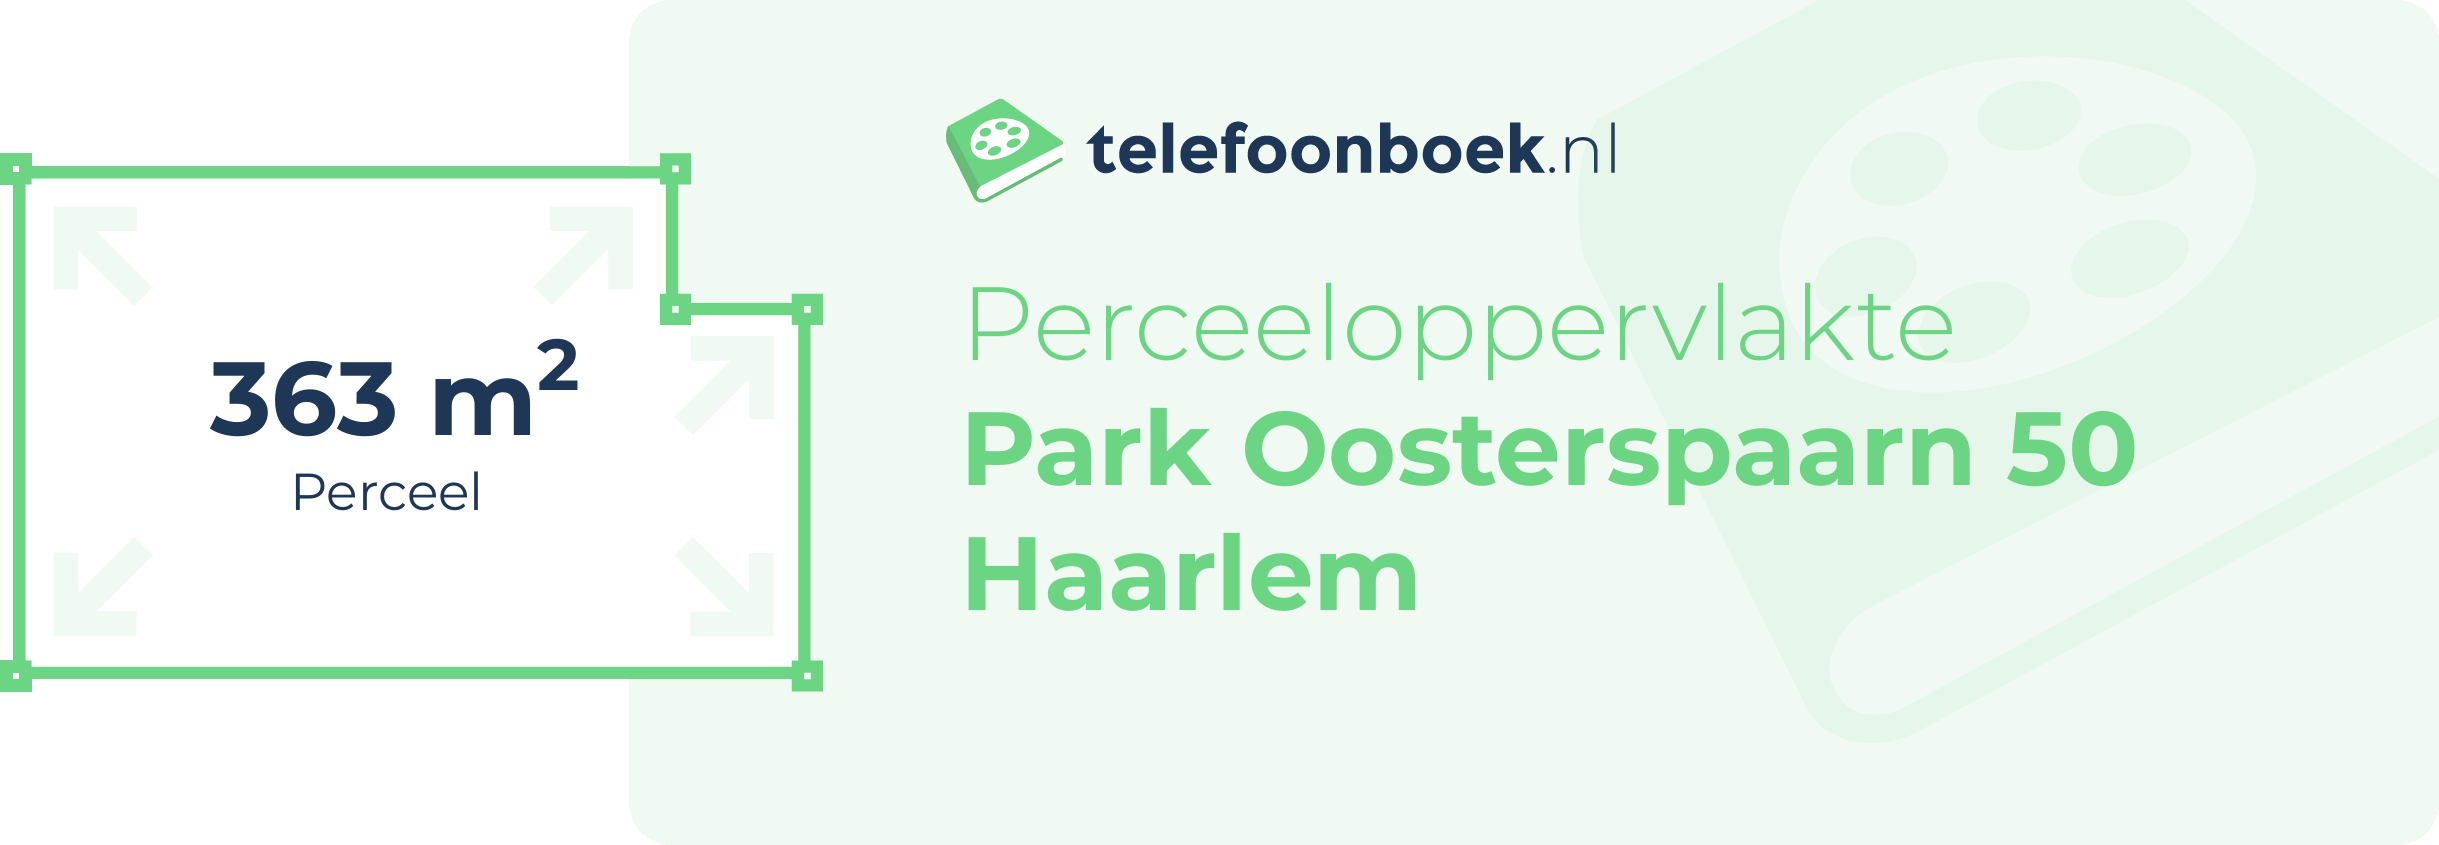 Perceeloppervlakte Park Oosterspaarn 50 Haarlem